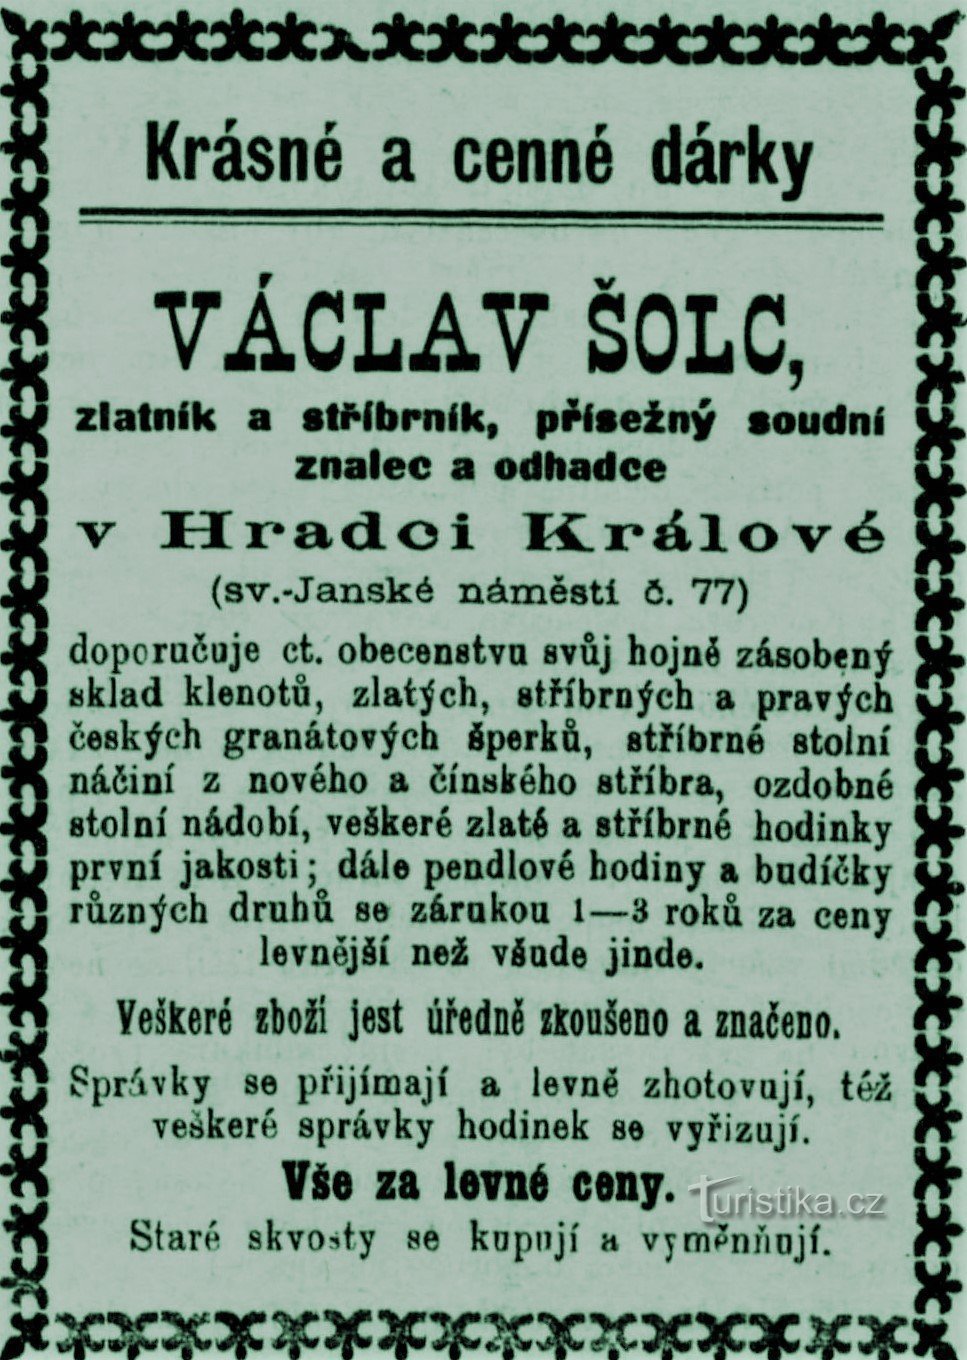 Pubblicità contemporanea dell'orafo Václav Šolec di Hradec Králové del 1899